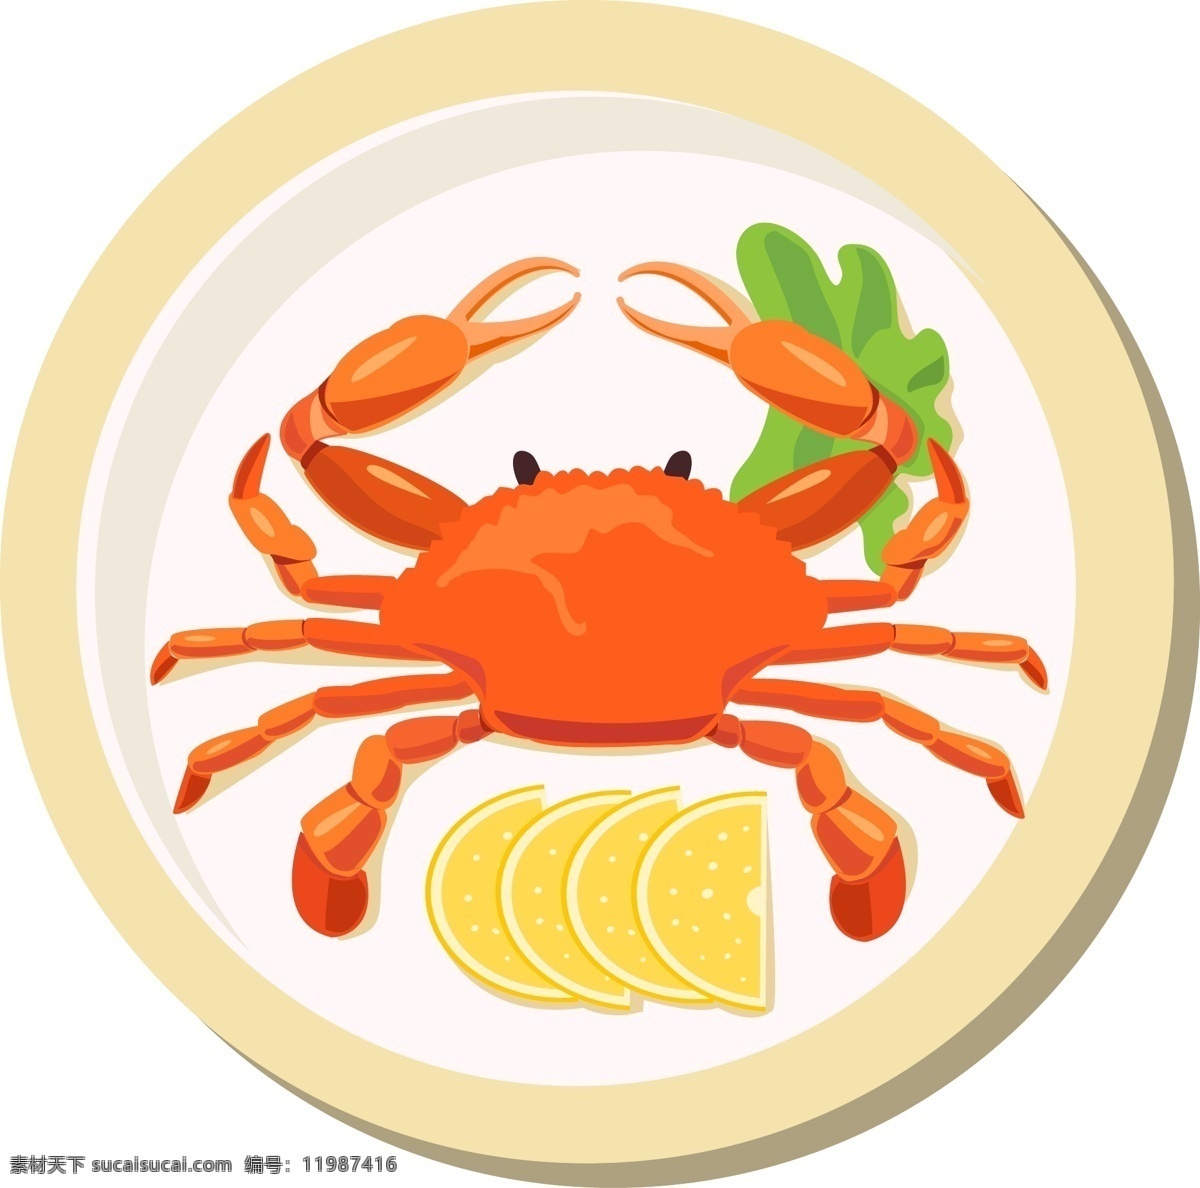 手绘 海鲜 螃蟹 插画 手绘螃蟹 螃蟹插画 盘子 柠檬片 海鲜螃蟹插画 海鲜螃蟹 插图 大螃蟹